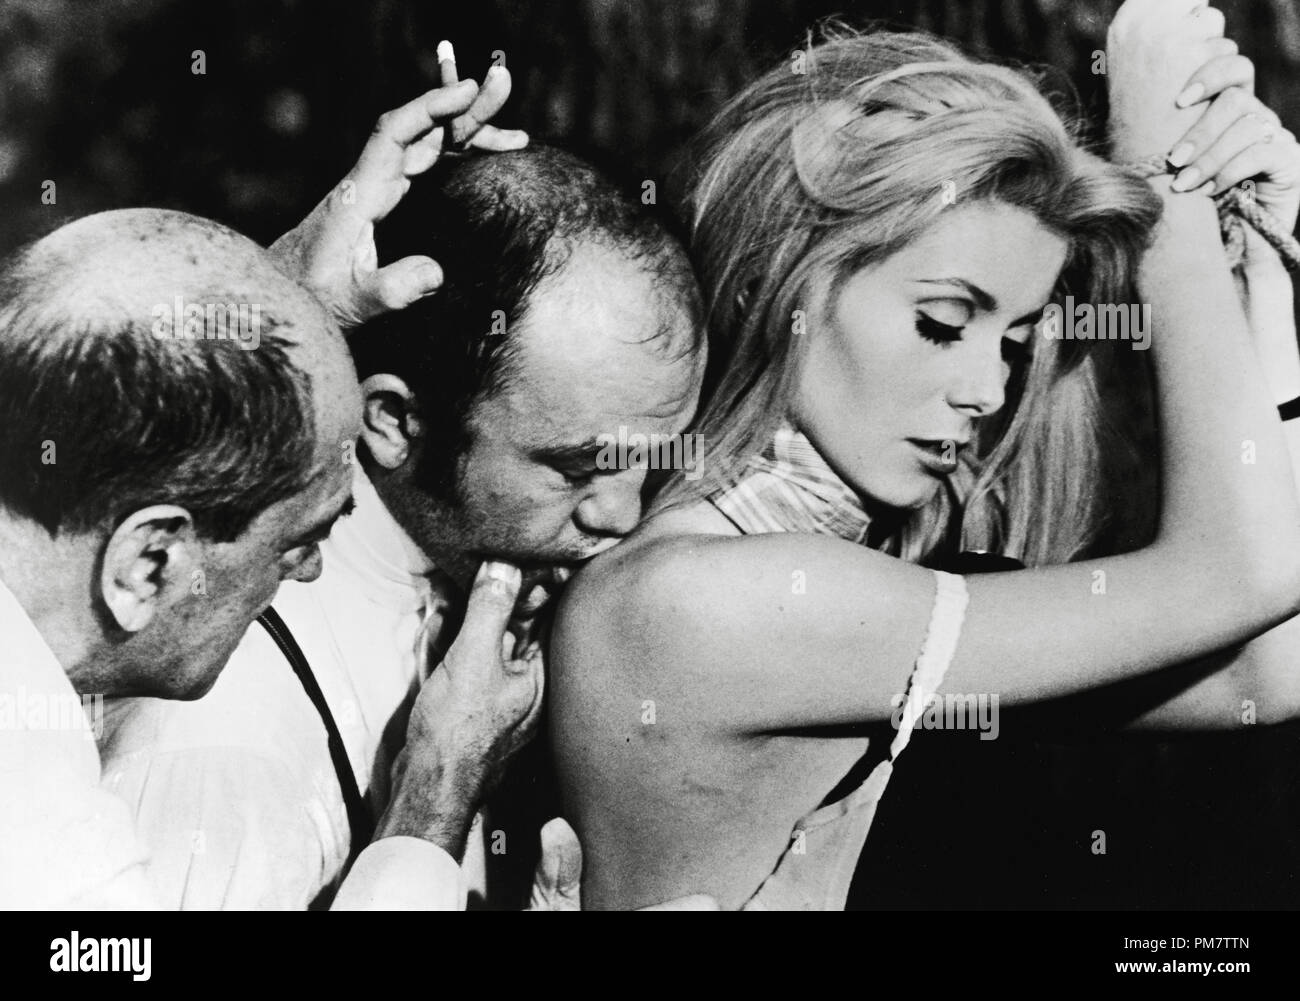 El director Luis Buñuel y Catherine Deneuve, "Belle de jour", 1967. Archivo de referencia # 31386 794 Foto de stock